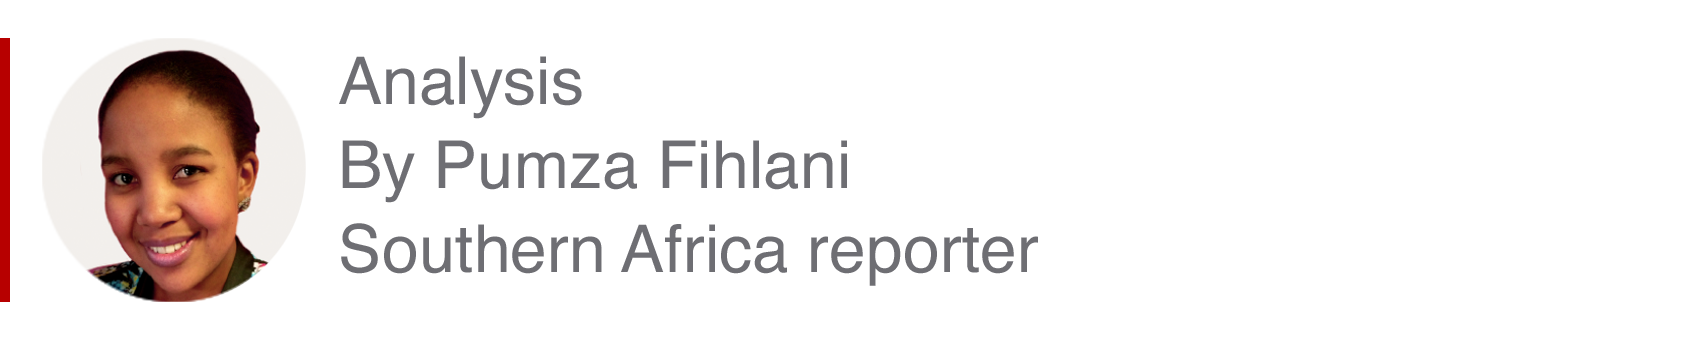 Аналитический бокс Пумзы Фихлани, репортера из южной части Африки